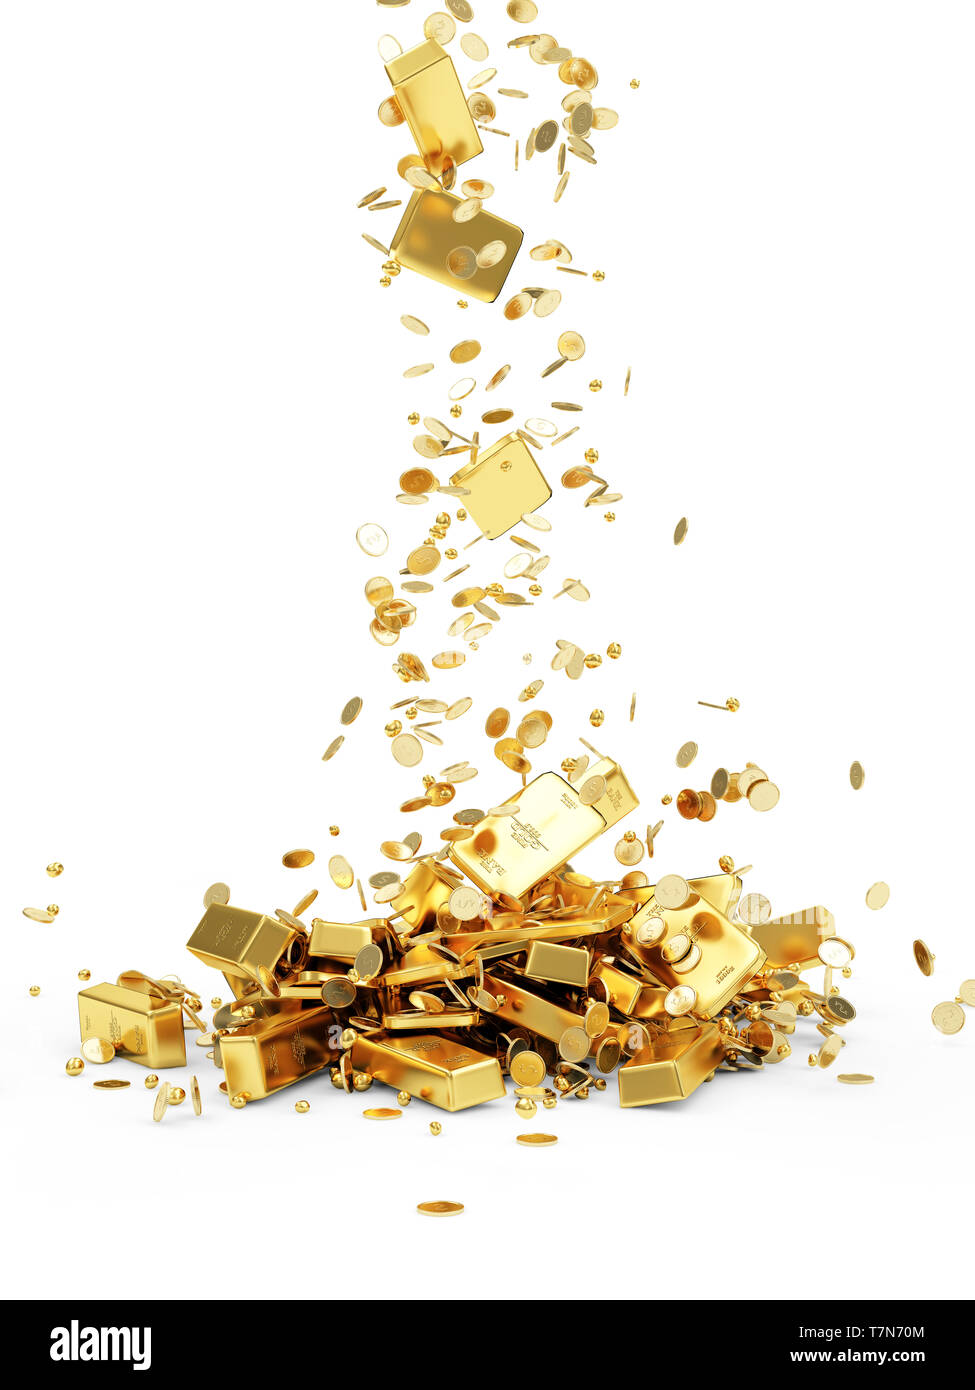 Der Schatz. Goldenen Barren, Münzen und Goldene Stücke isoliert auf weißem Hintergrund. Unternehmen finanzielle Konzept Stockfoto